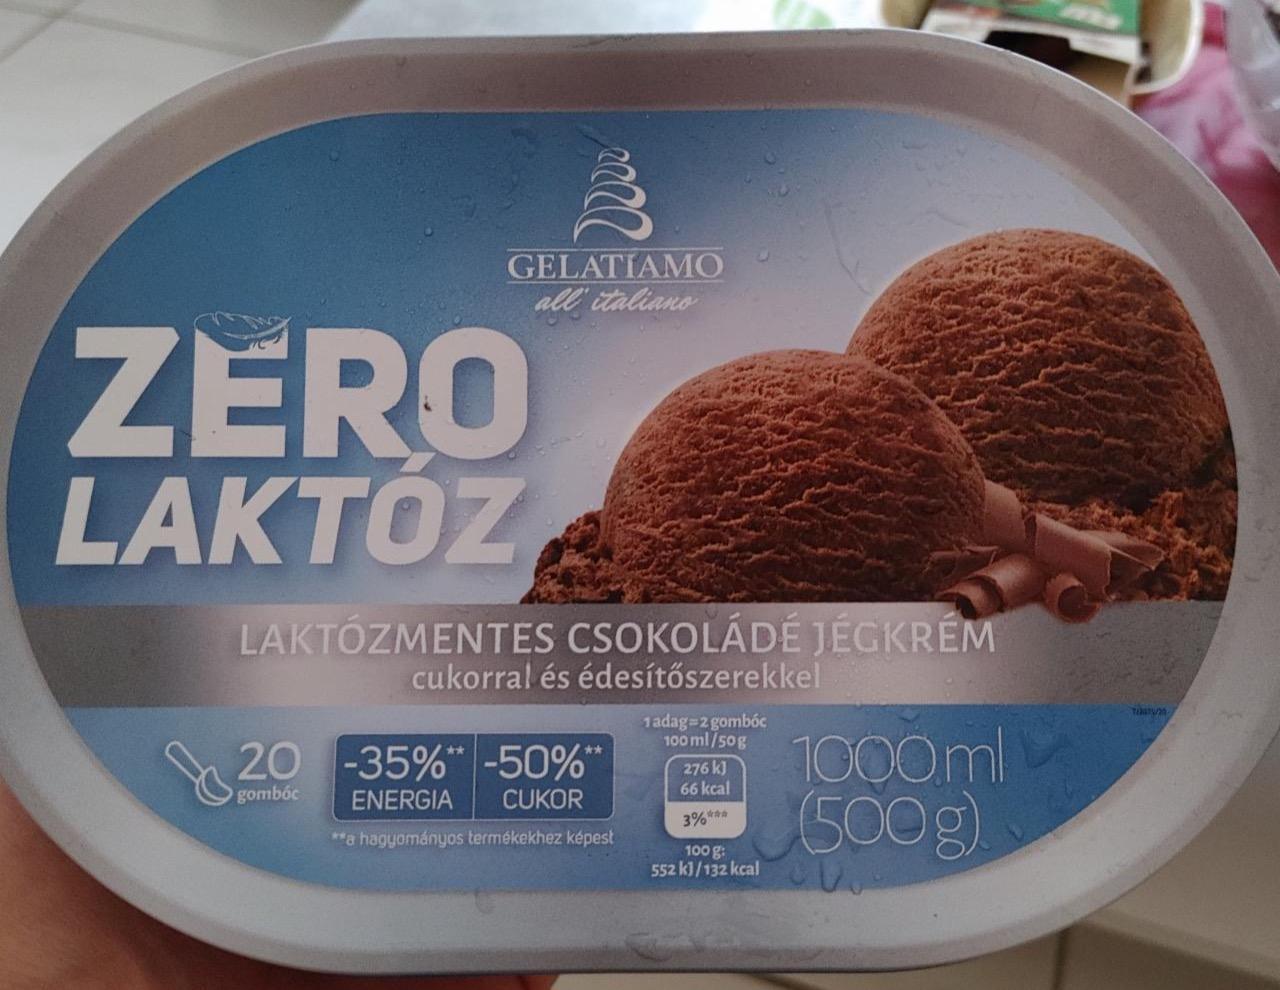 Képek - Zero laktózmentes csokoládé jégkrém Gelatiamo